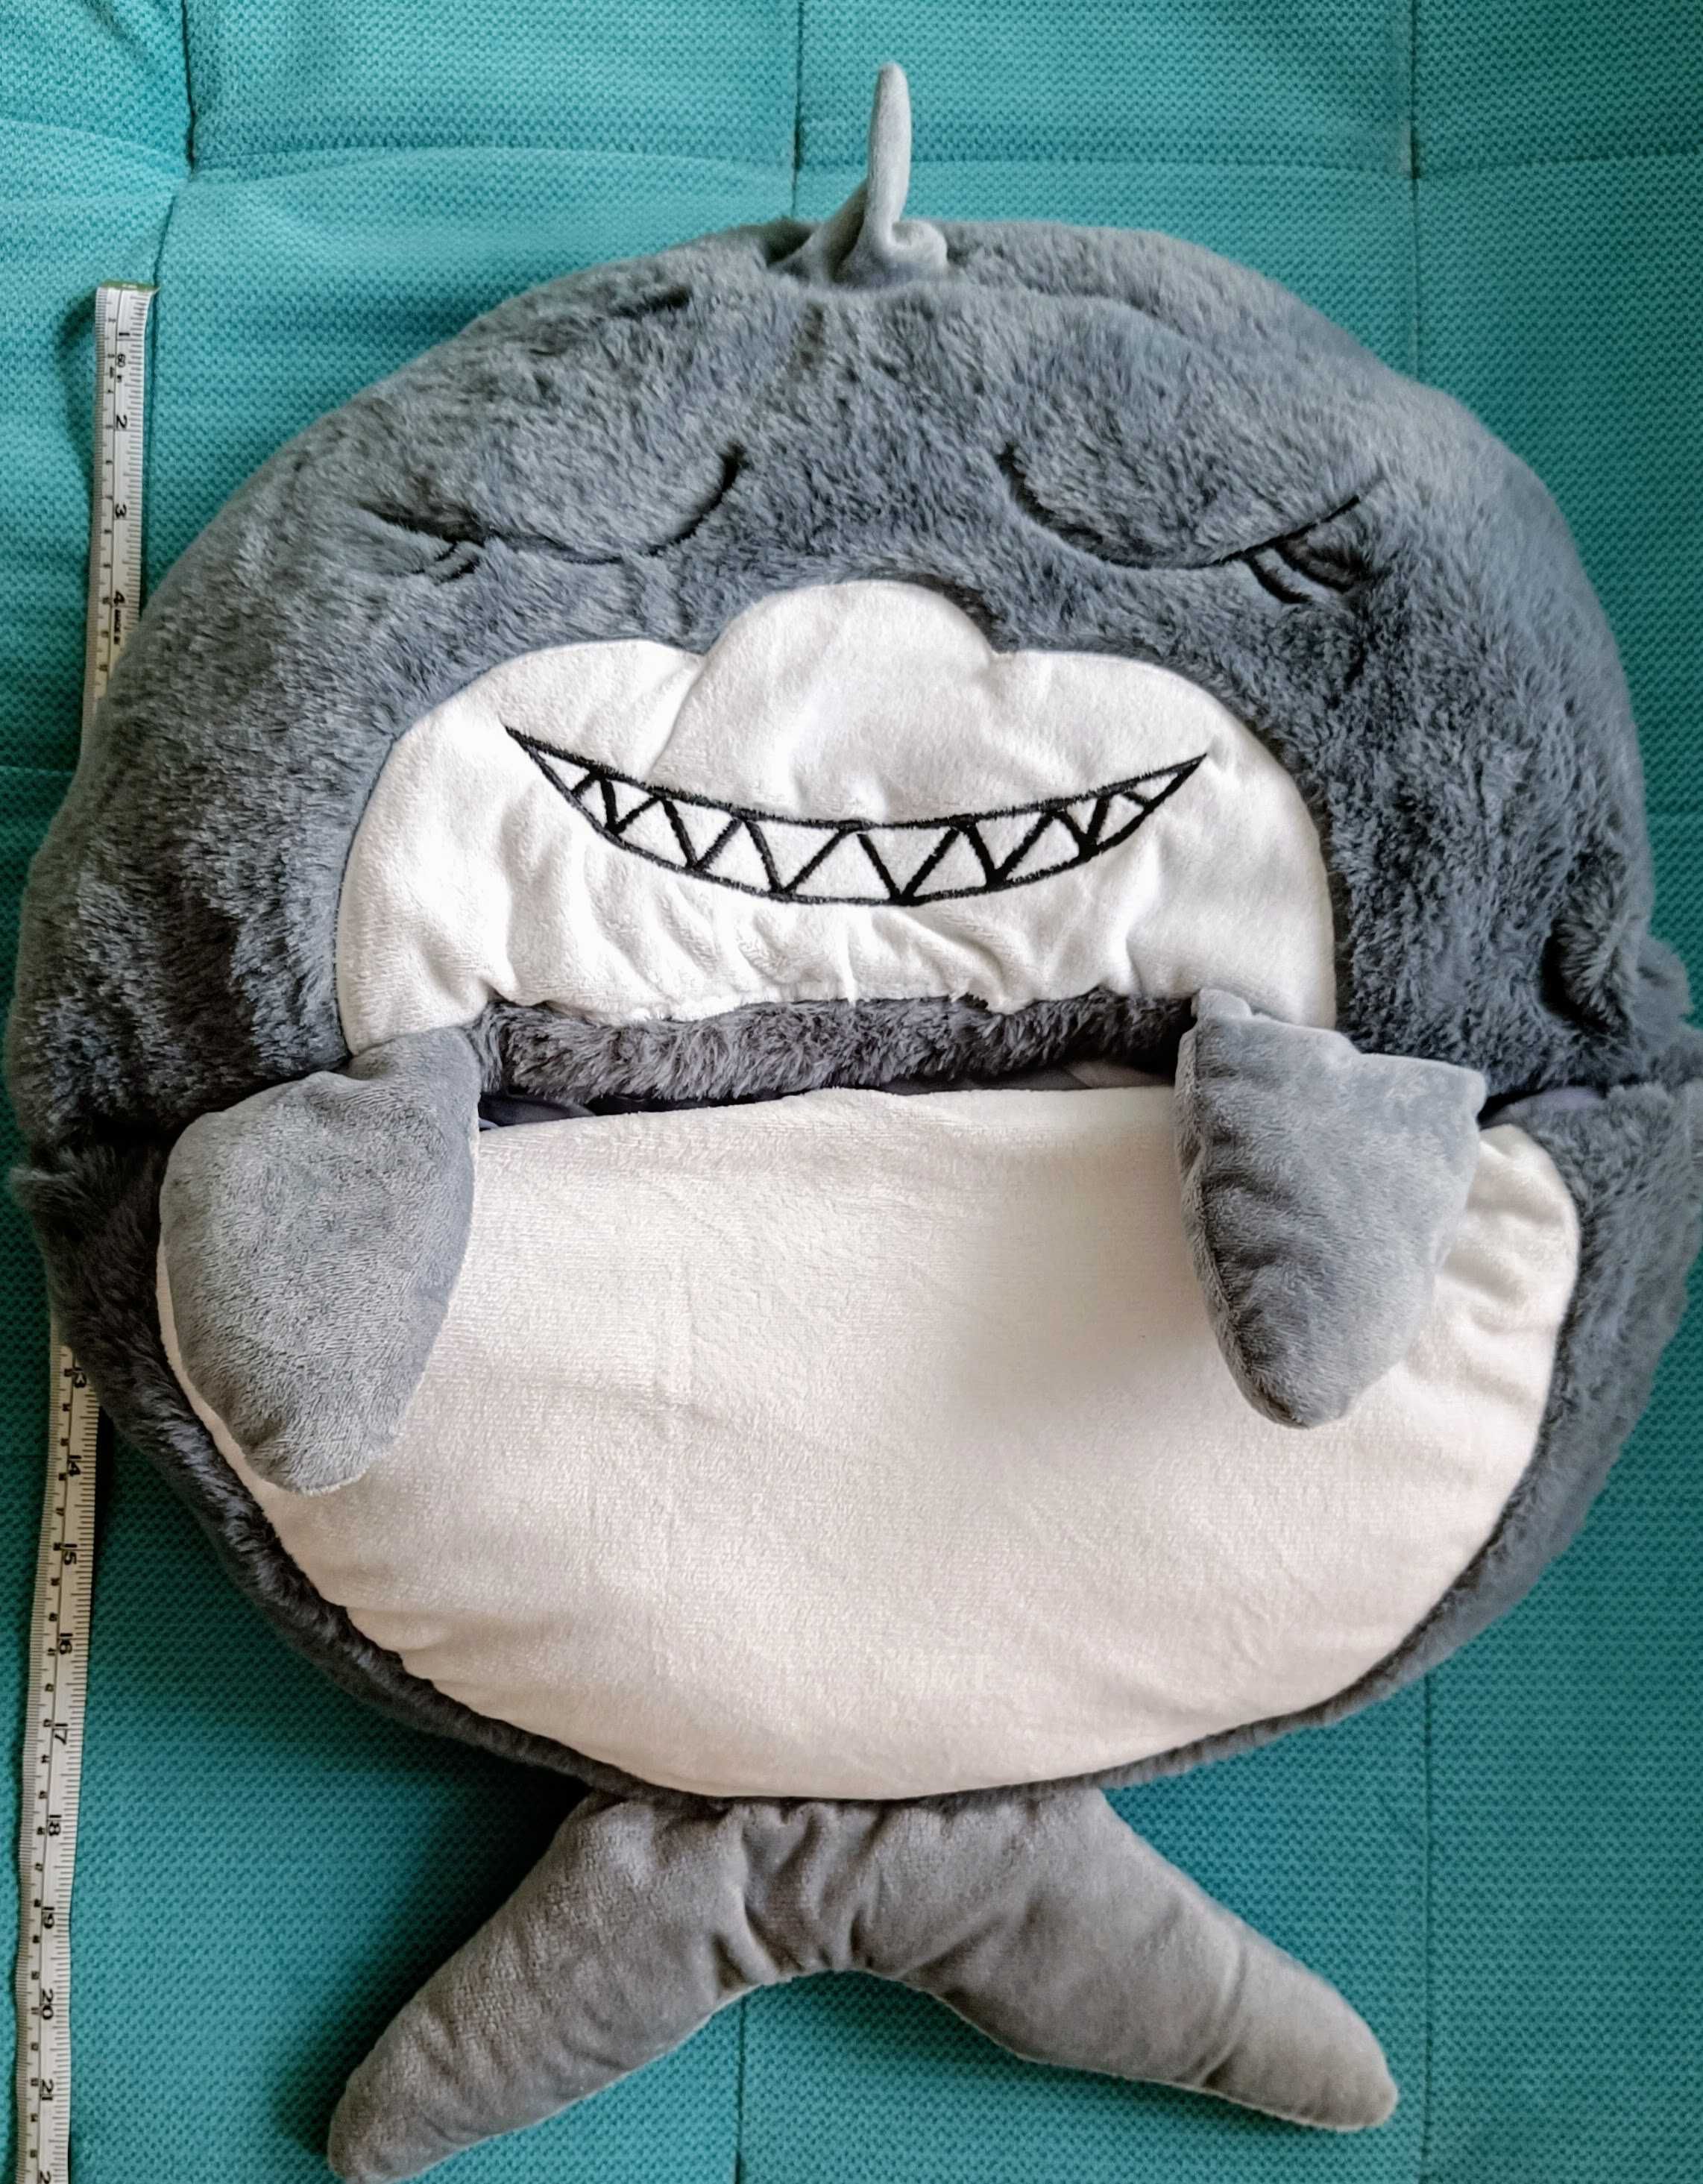 Спален чувал с възглавница за деца, акула